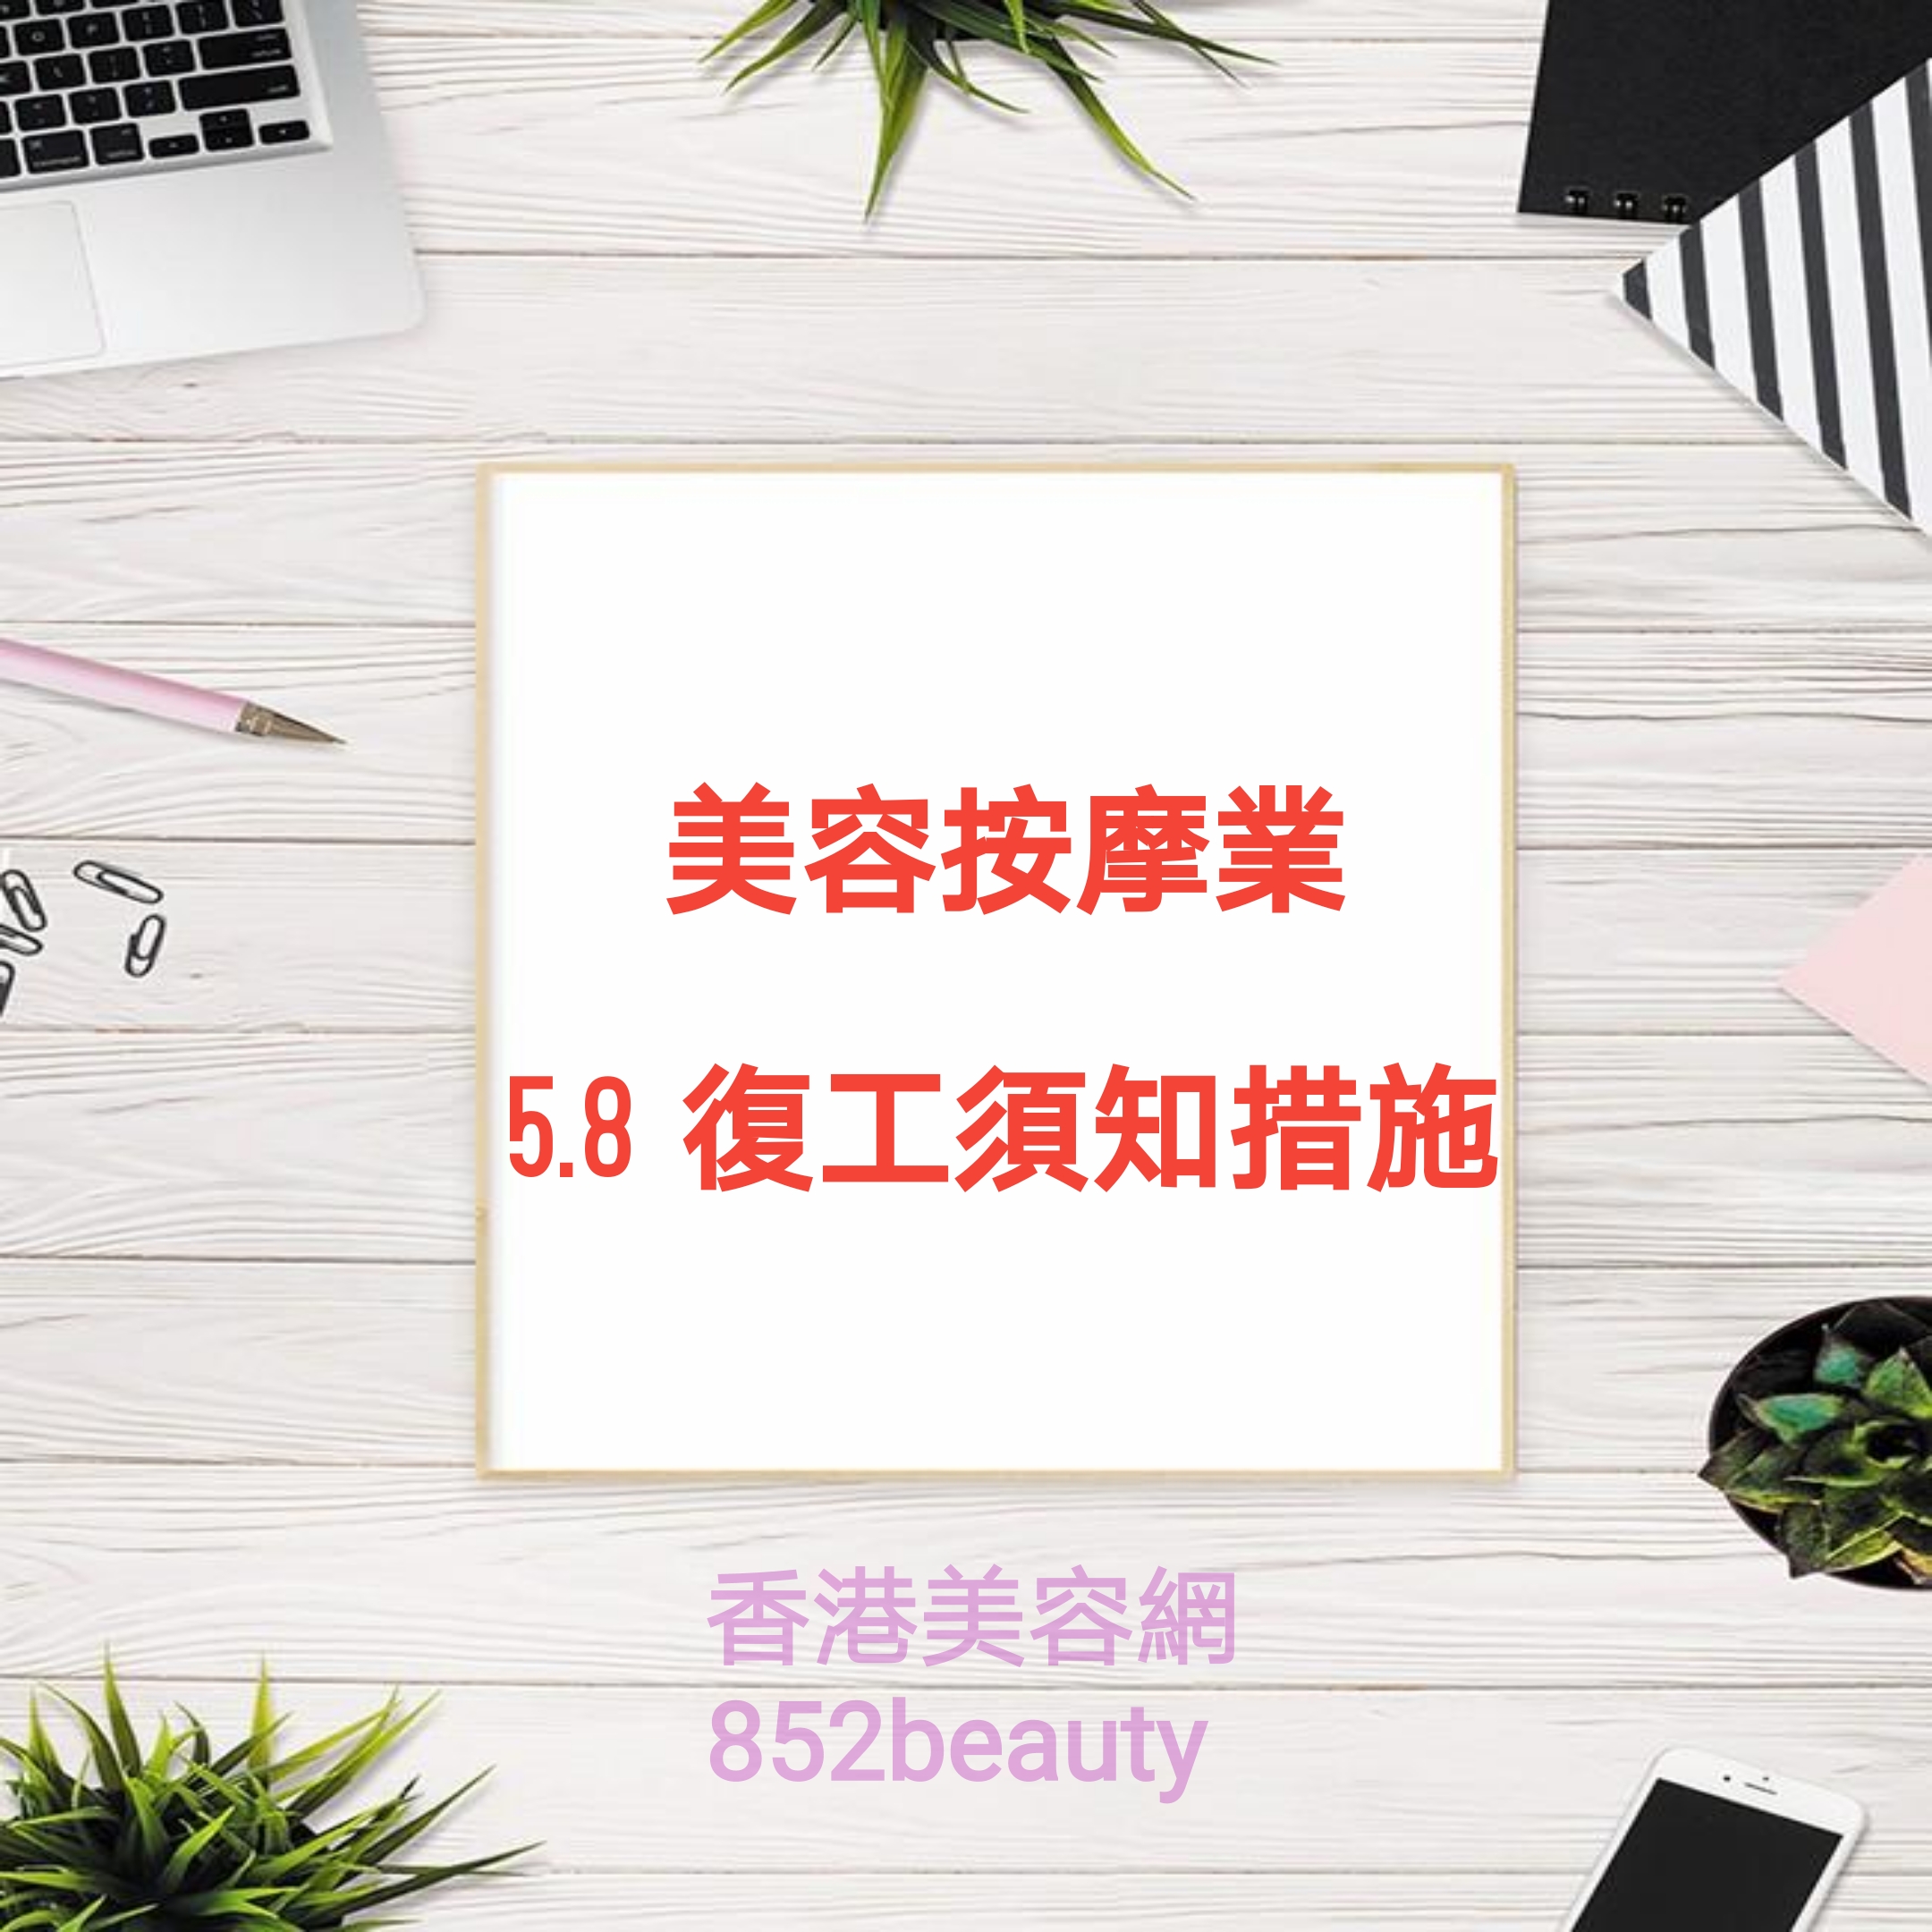 香港美容網 Hong Kong Beauty Salon 最新美容資訊: 美容院、按摩院 最新 復工 措施概覧 (有效期為 2020年5月8日至5月21日) 